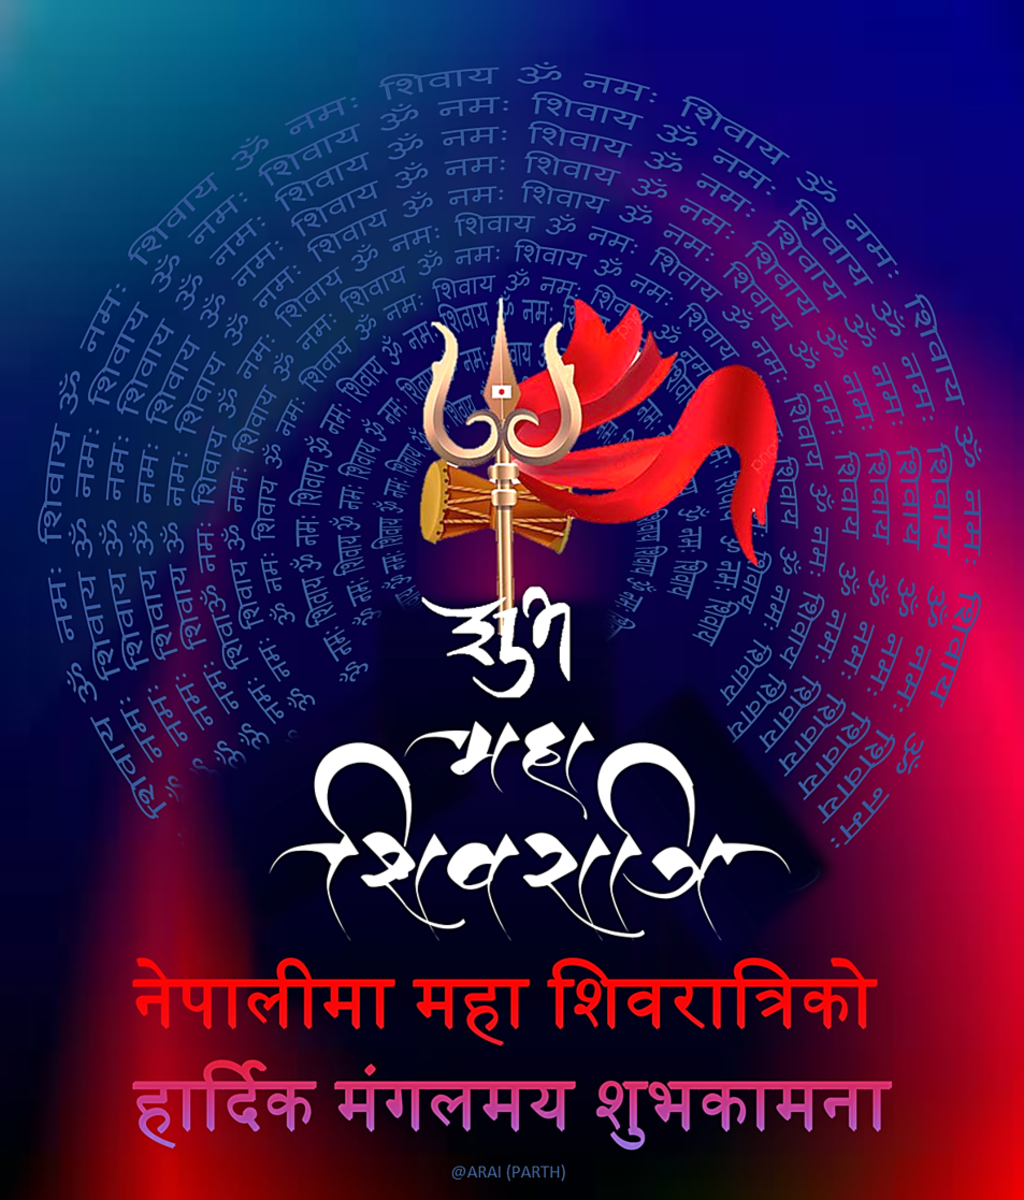 Happy Maha Shivaratri Wishes and Greetings in Nepali Language